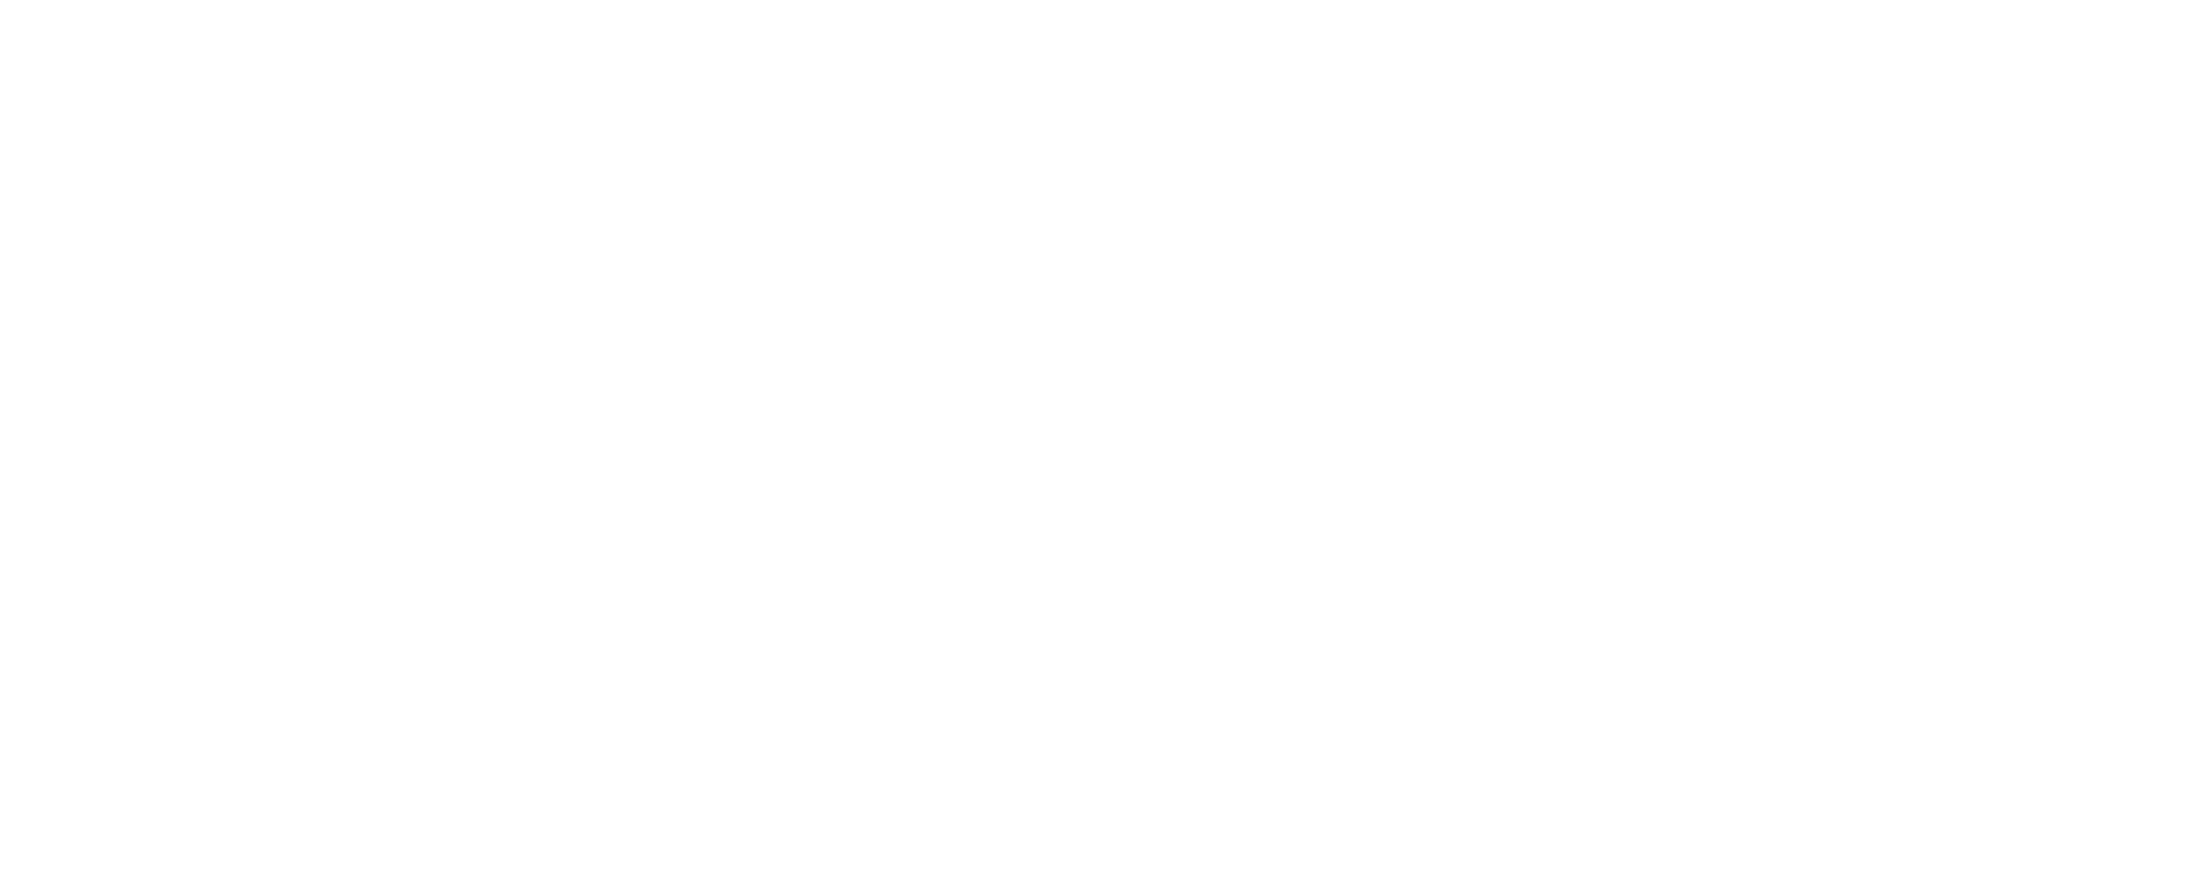 Rivalz to end ALZ Alzheimer's Association